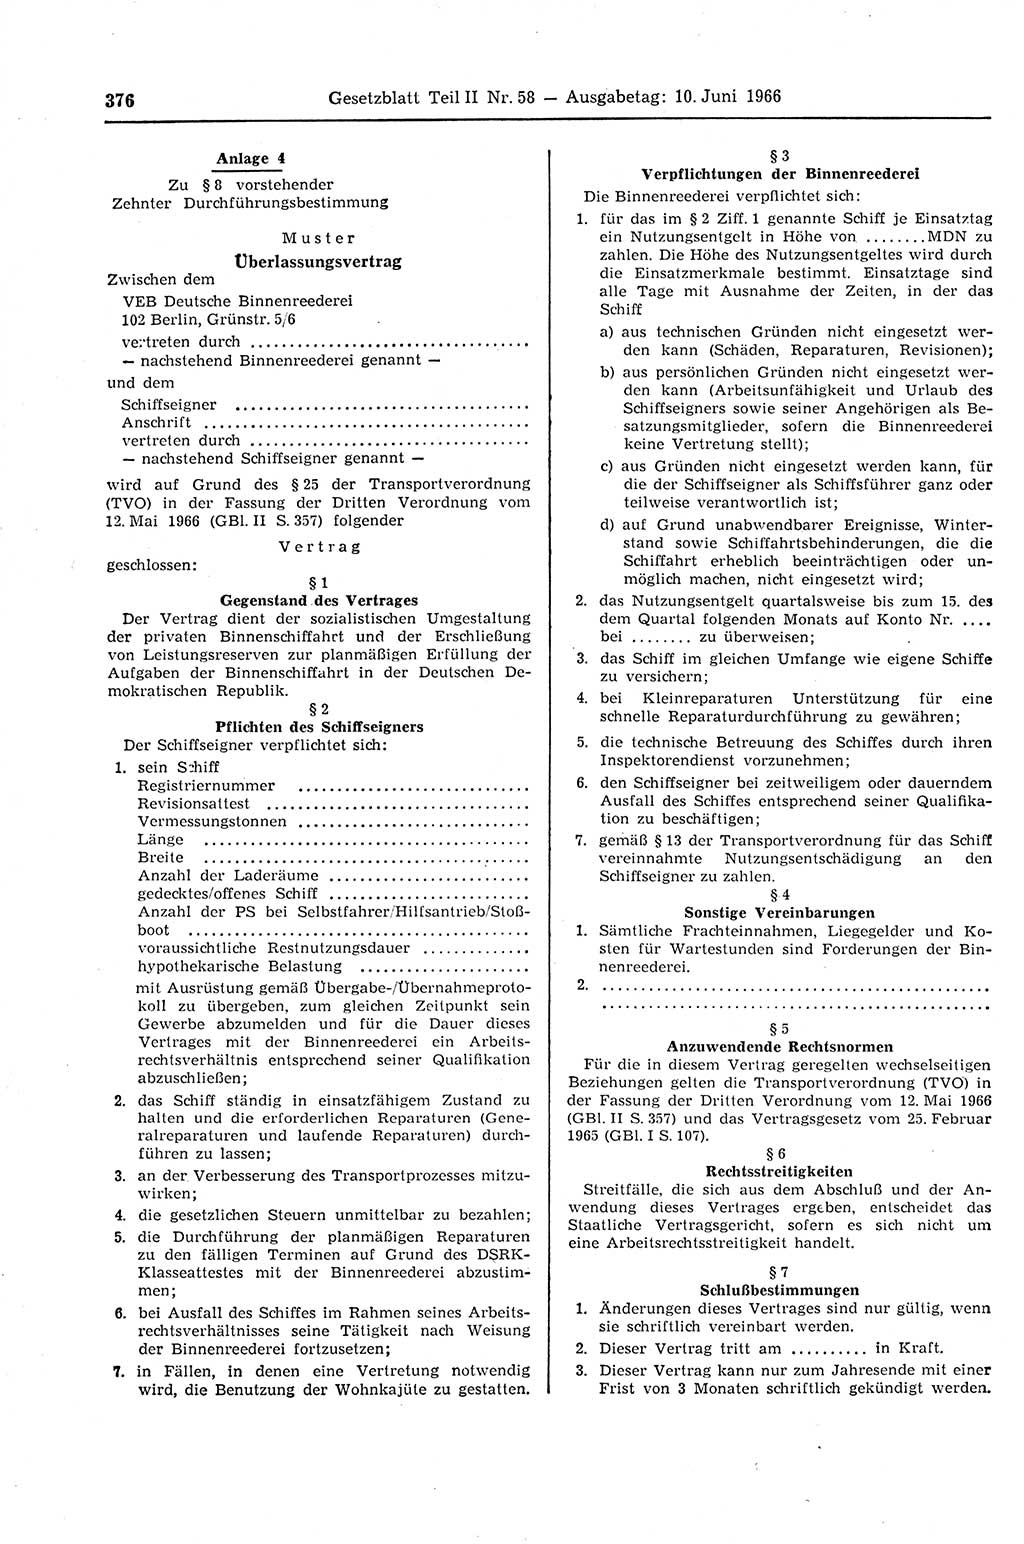 Gesetzblatt (GBl.) der Deutschen Demokratischen Republik (DDR) Teil ⅠⅠ 1966, Seite 376 (GBl. DDR ⅠⅠ 1966, S. 376)